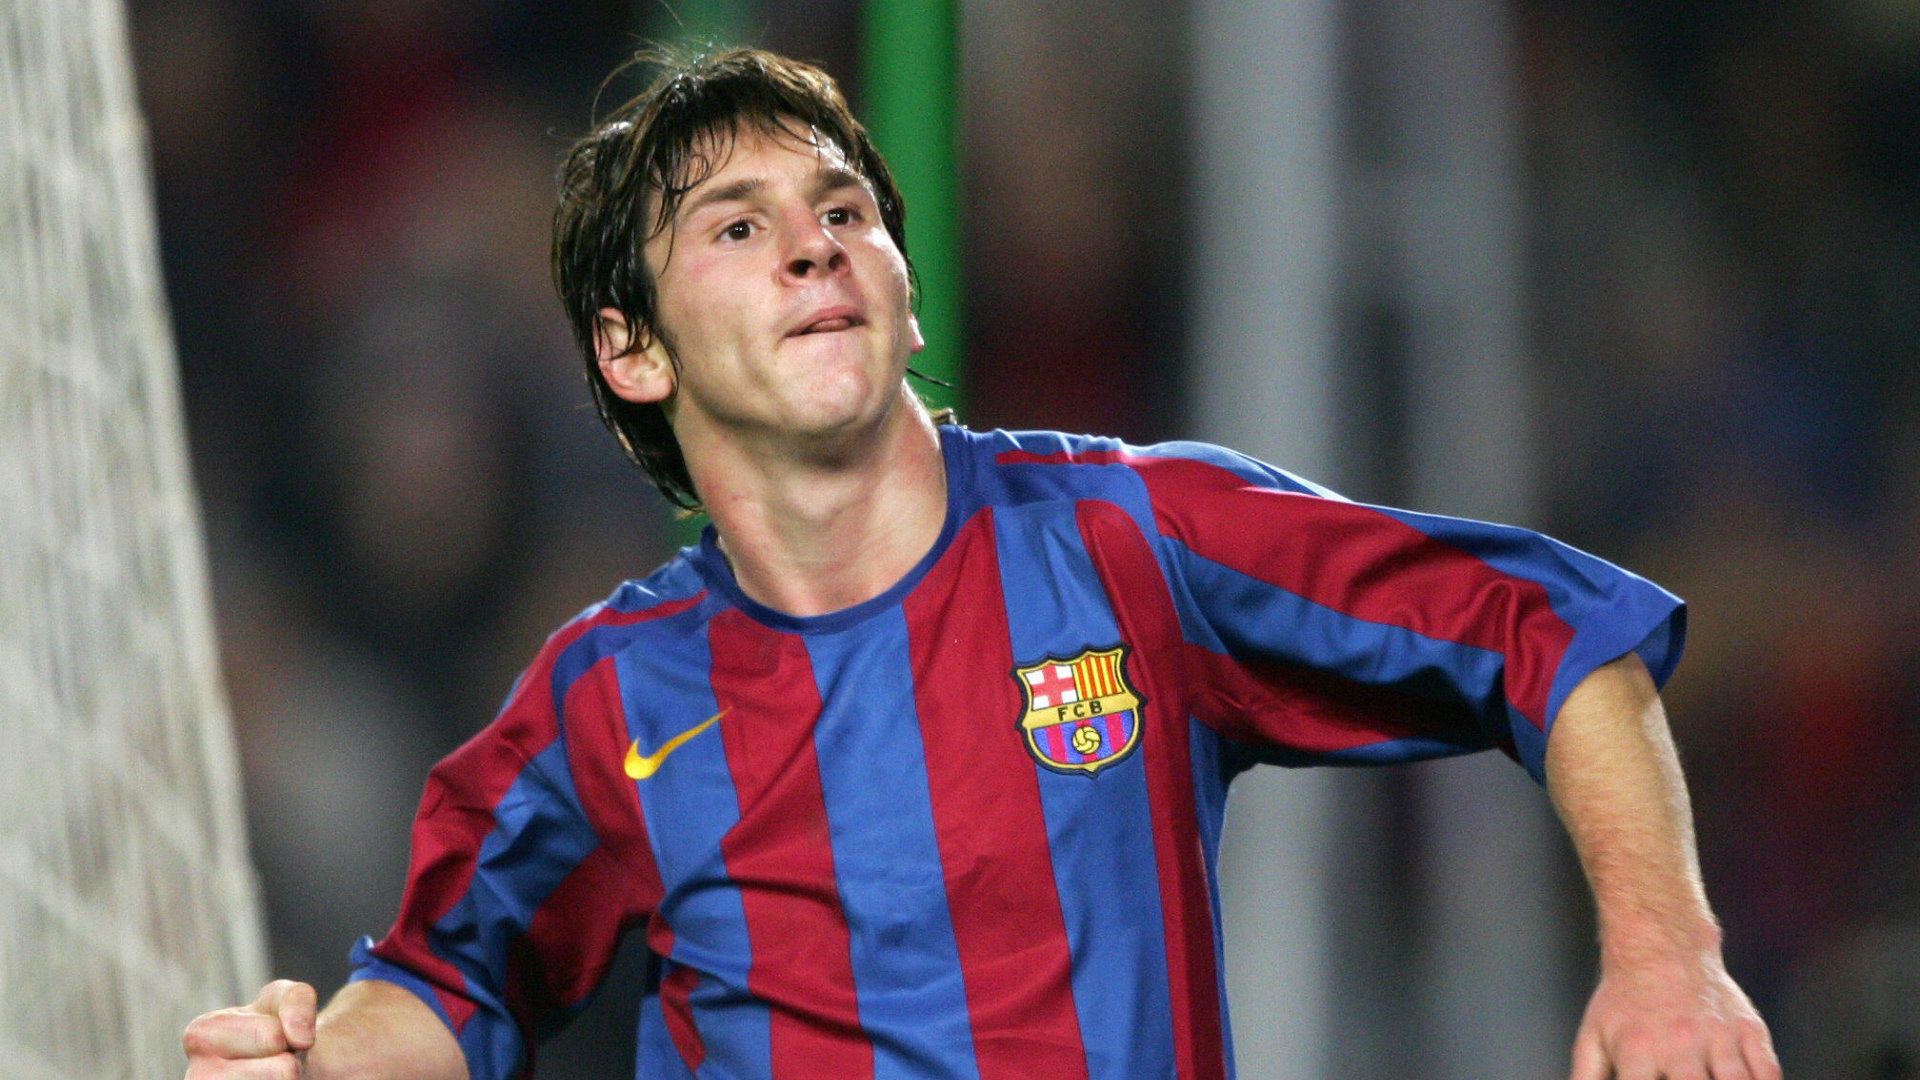 Tại sao gọi Messi là El Pulga: Ý nghĩa và nguồn gốc của biệt danh Messi - BÓNG ĐÁ ONLINE